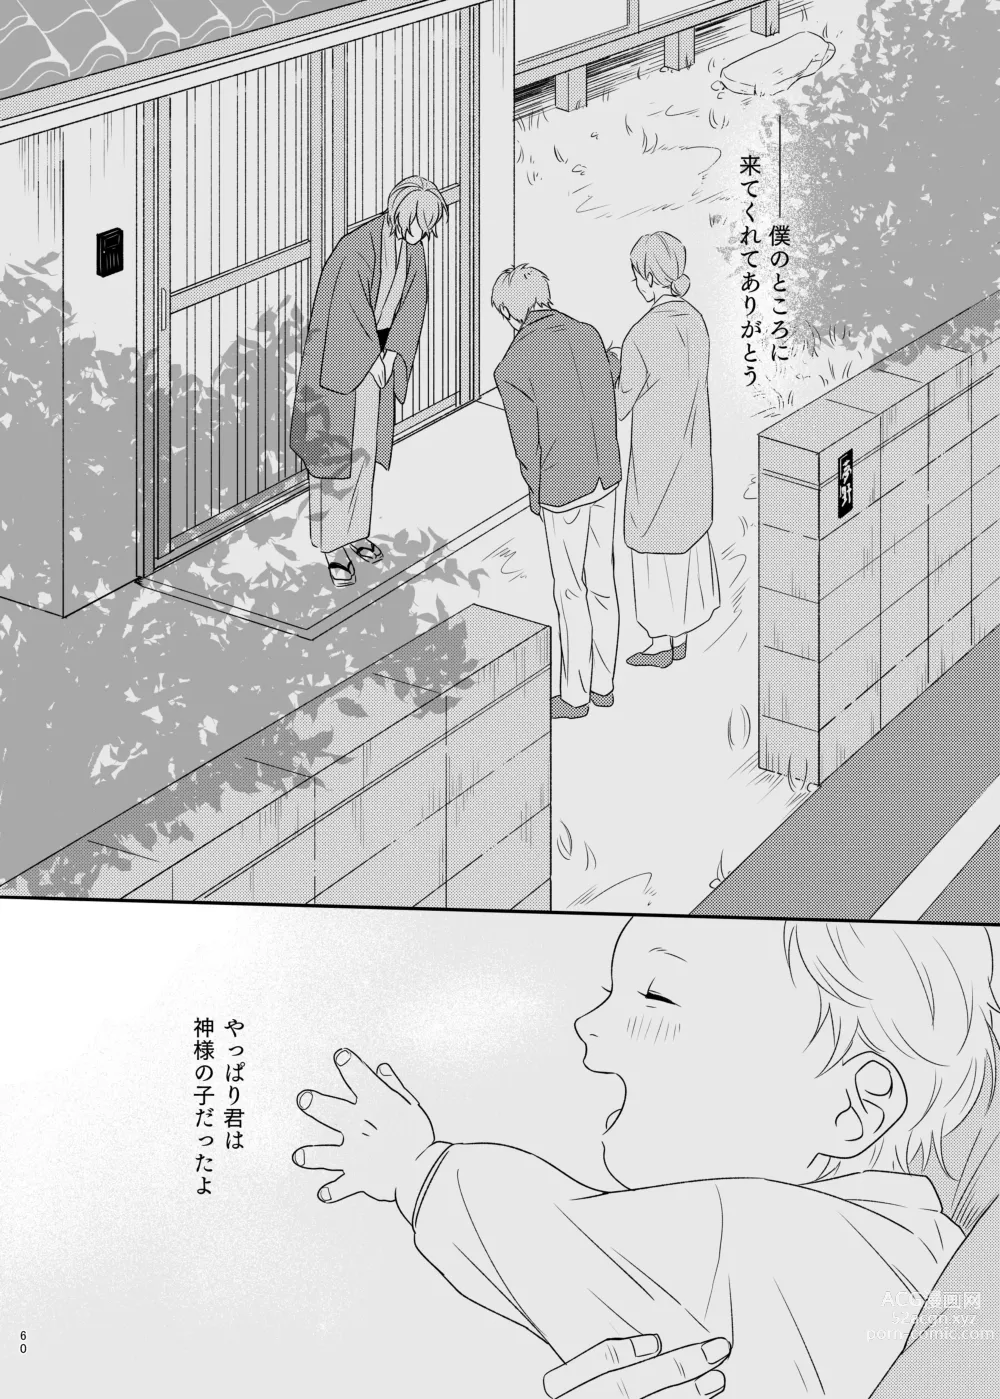 Page 60 of doujinshi Kami sama no ko